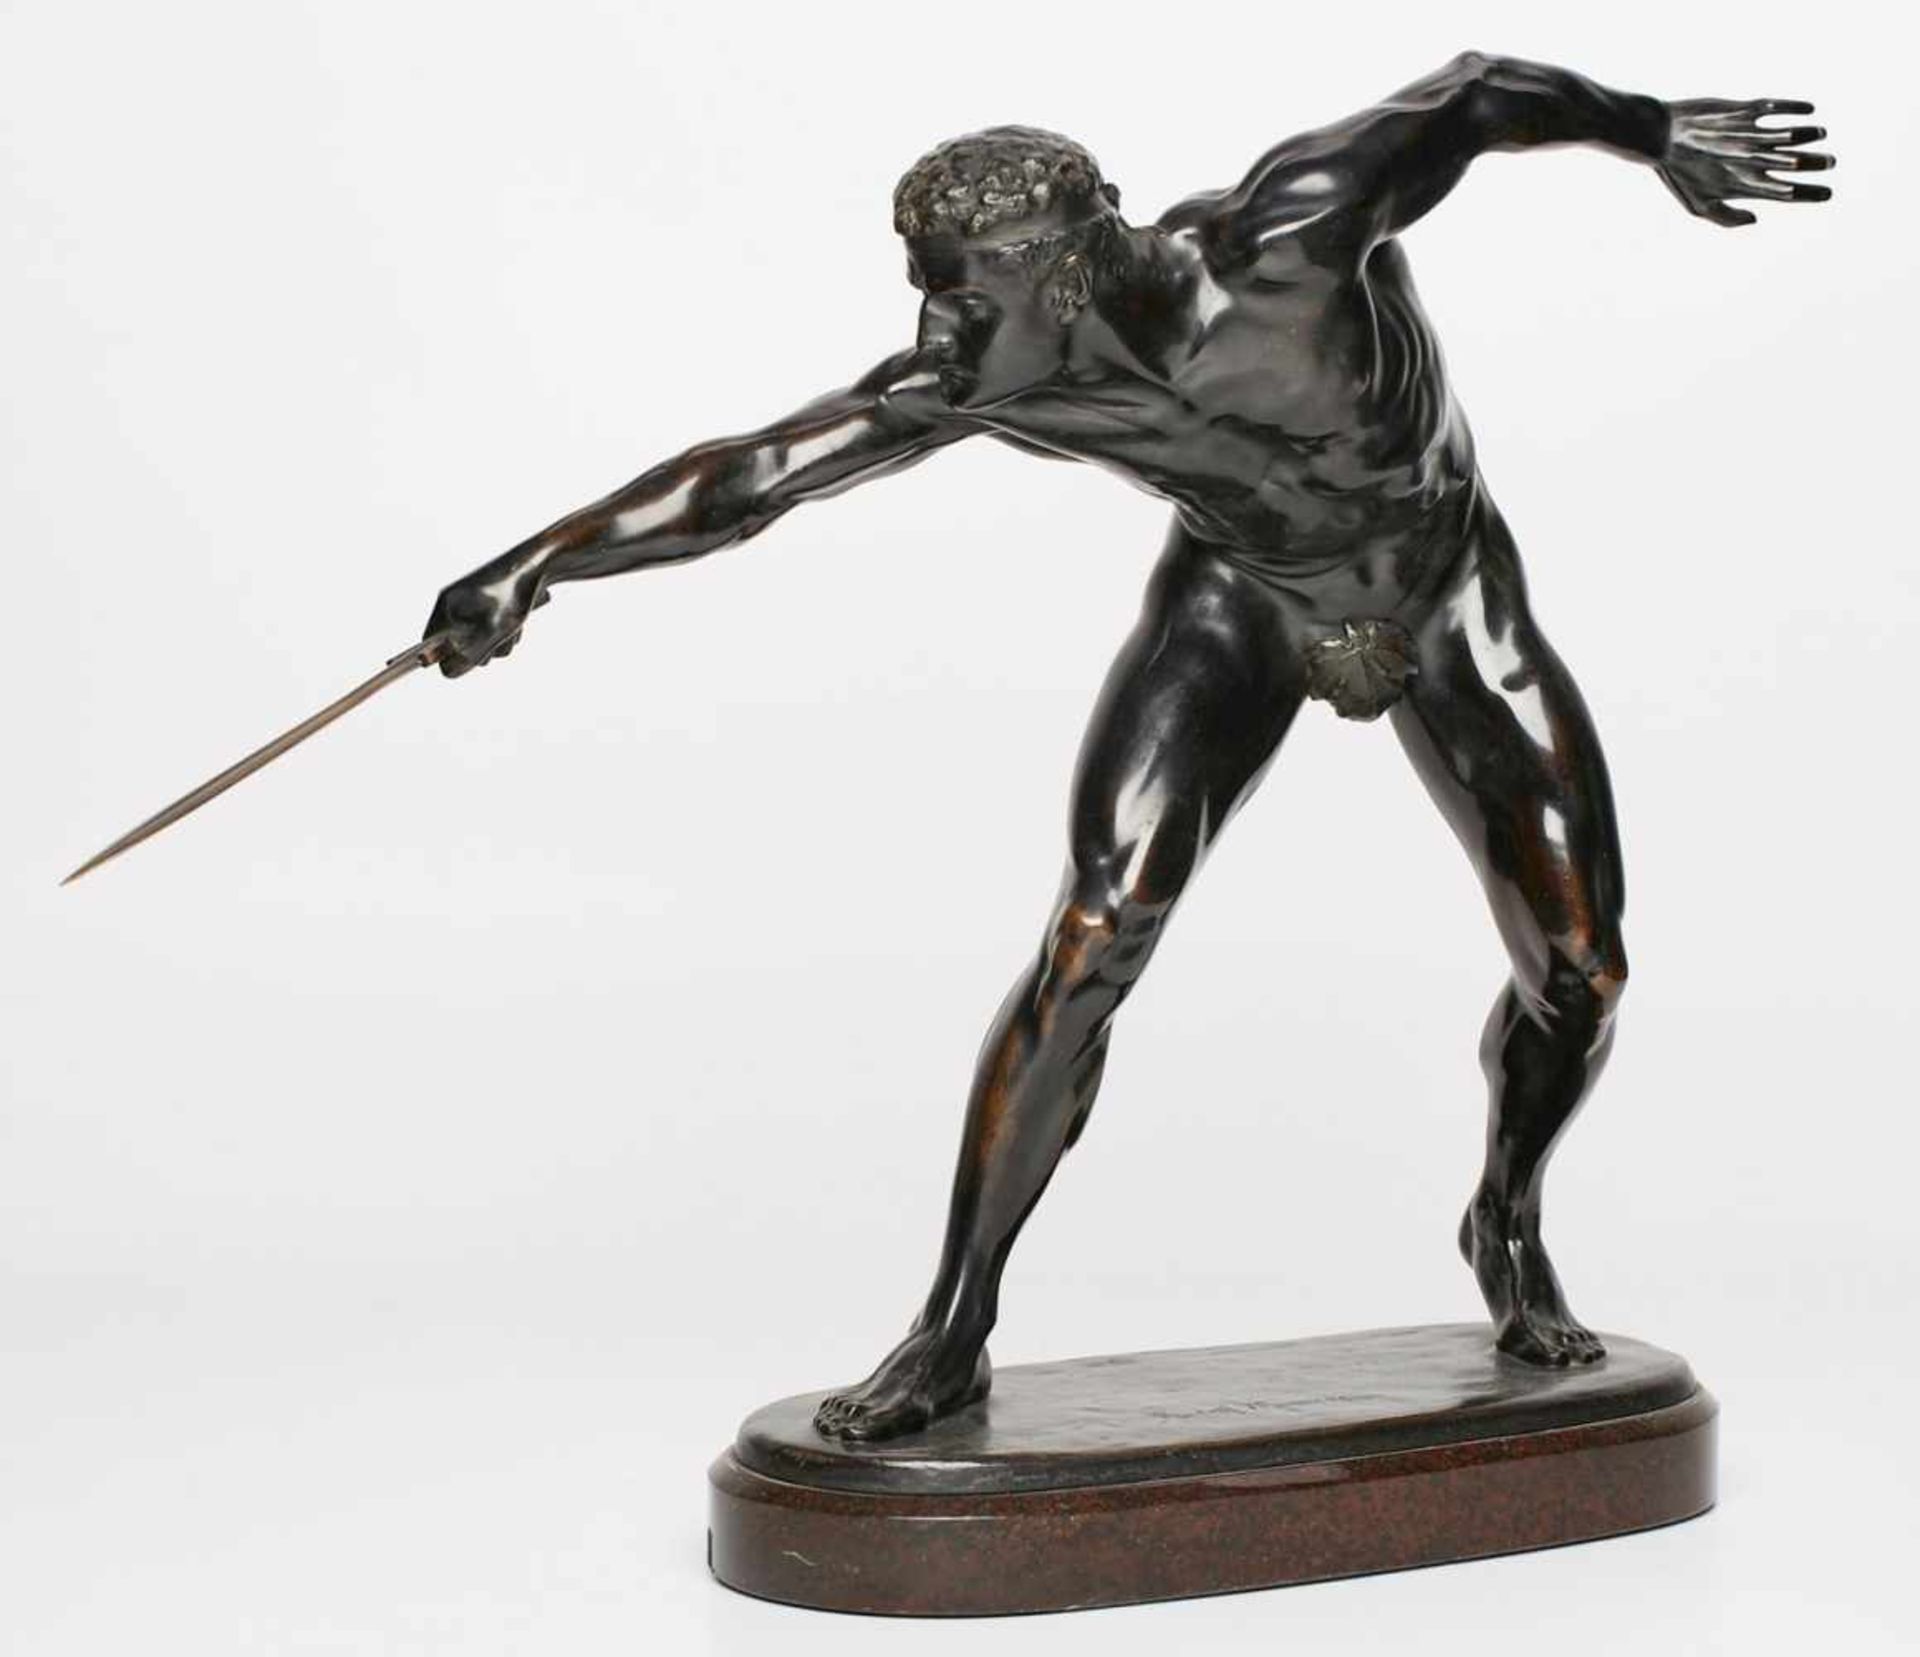 Bronze Rudolf Marcuse(1878 Berlin - 1940 London) "Gladiator" um 1900. Schwarz patiniert. Athletische